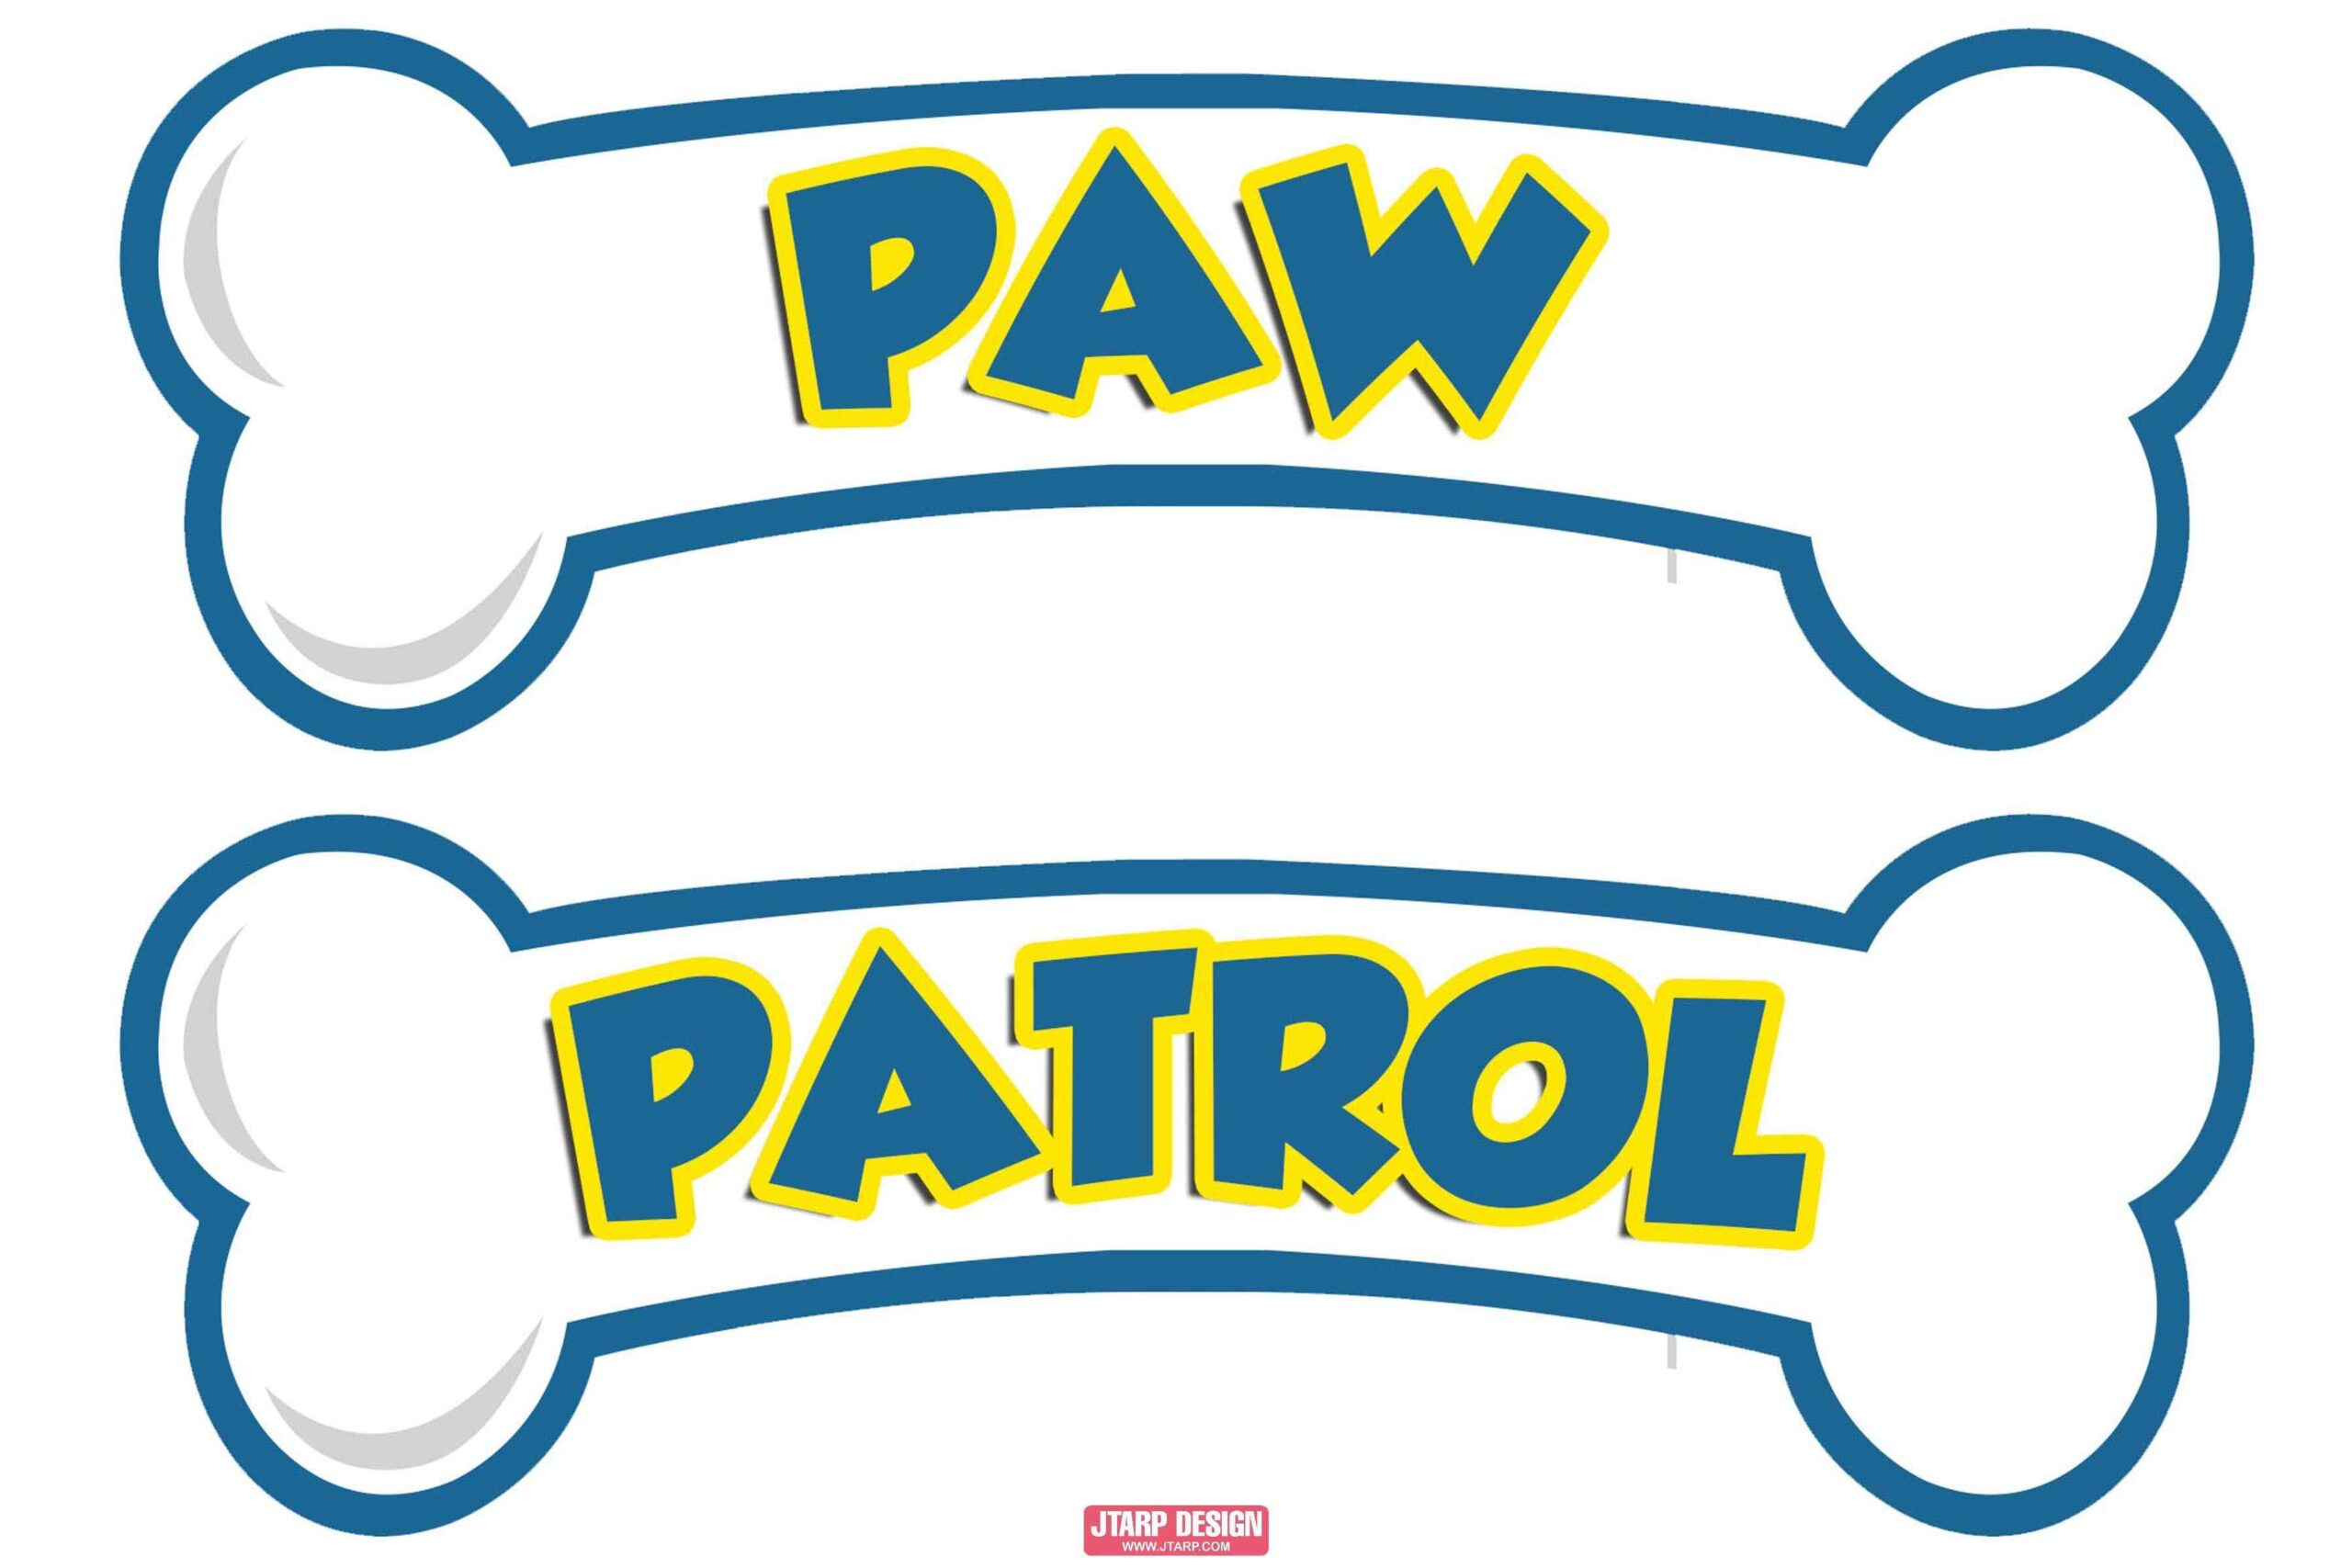 Paw Patrol Bones w Paw Patrol